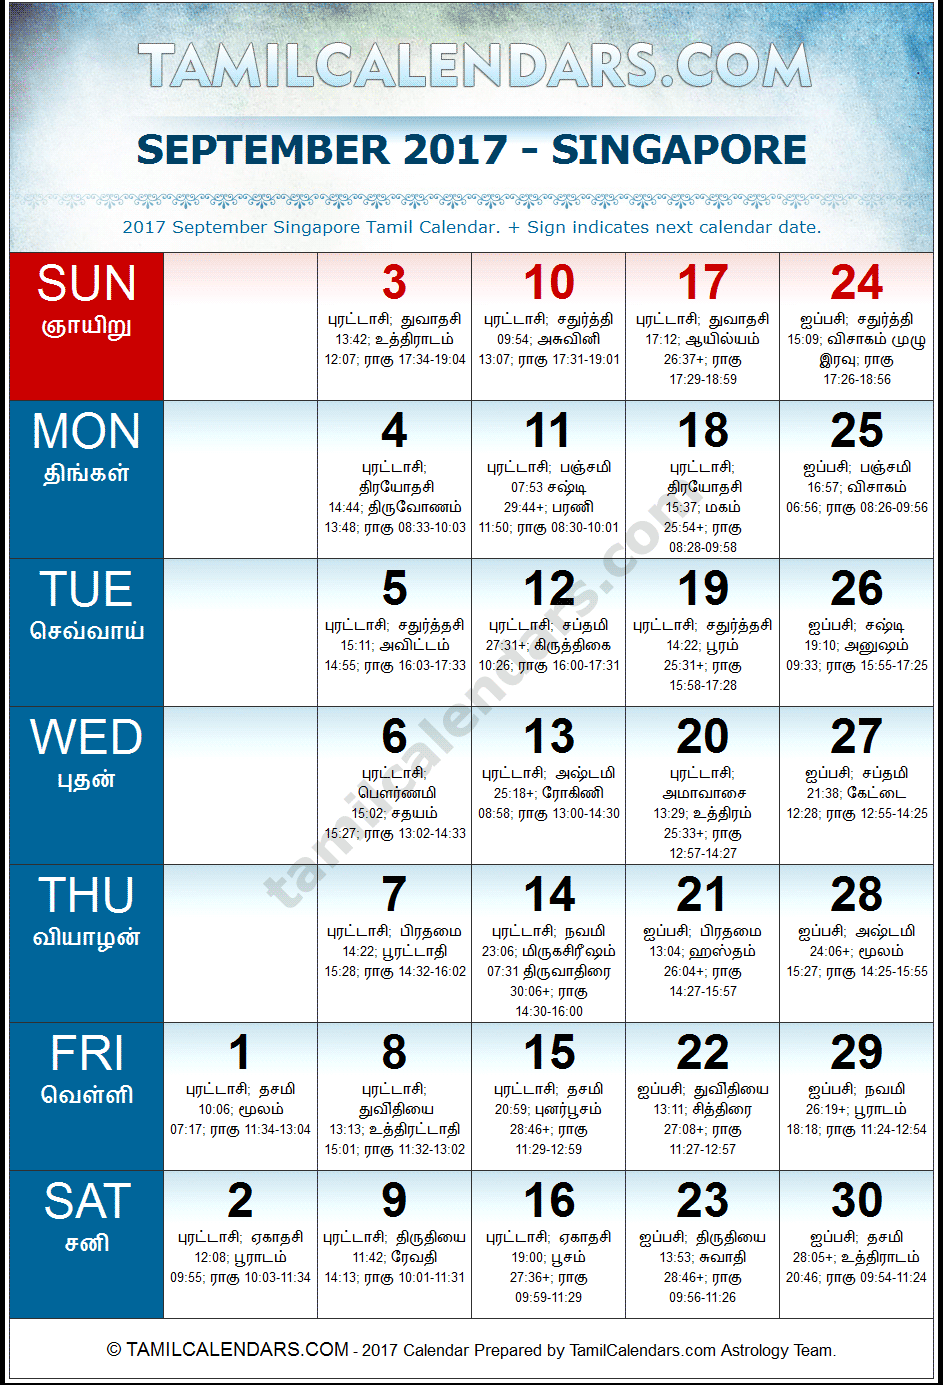 September 2017 Tamil Calendar for Singapore